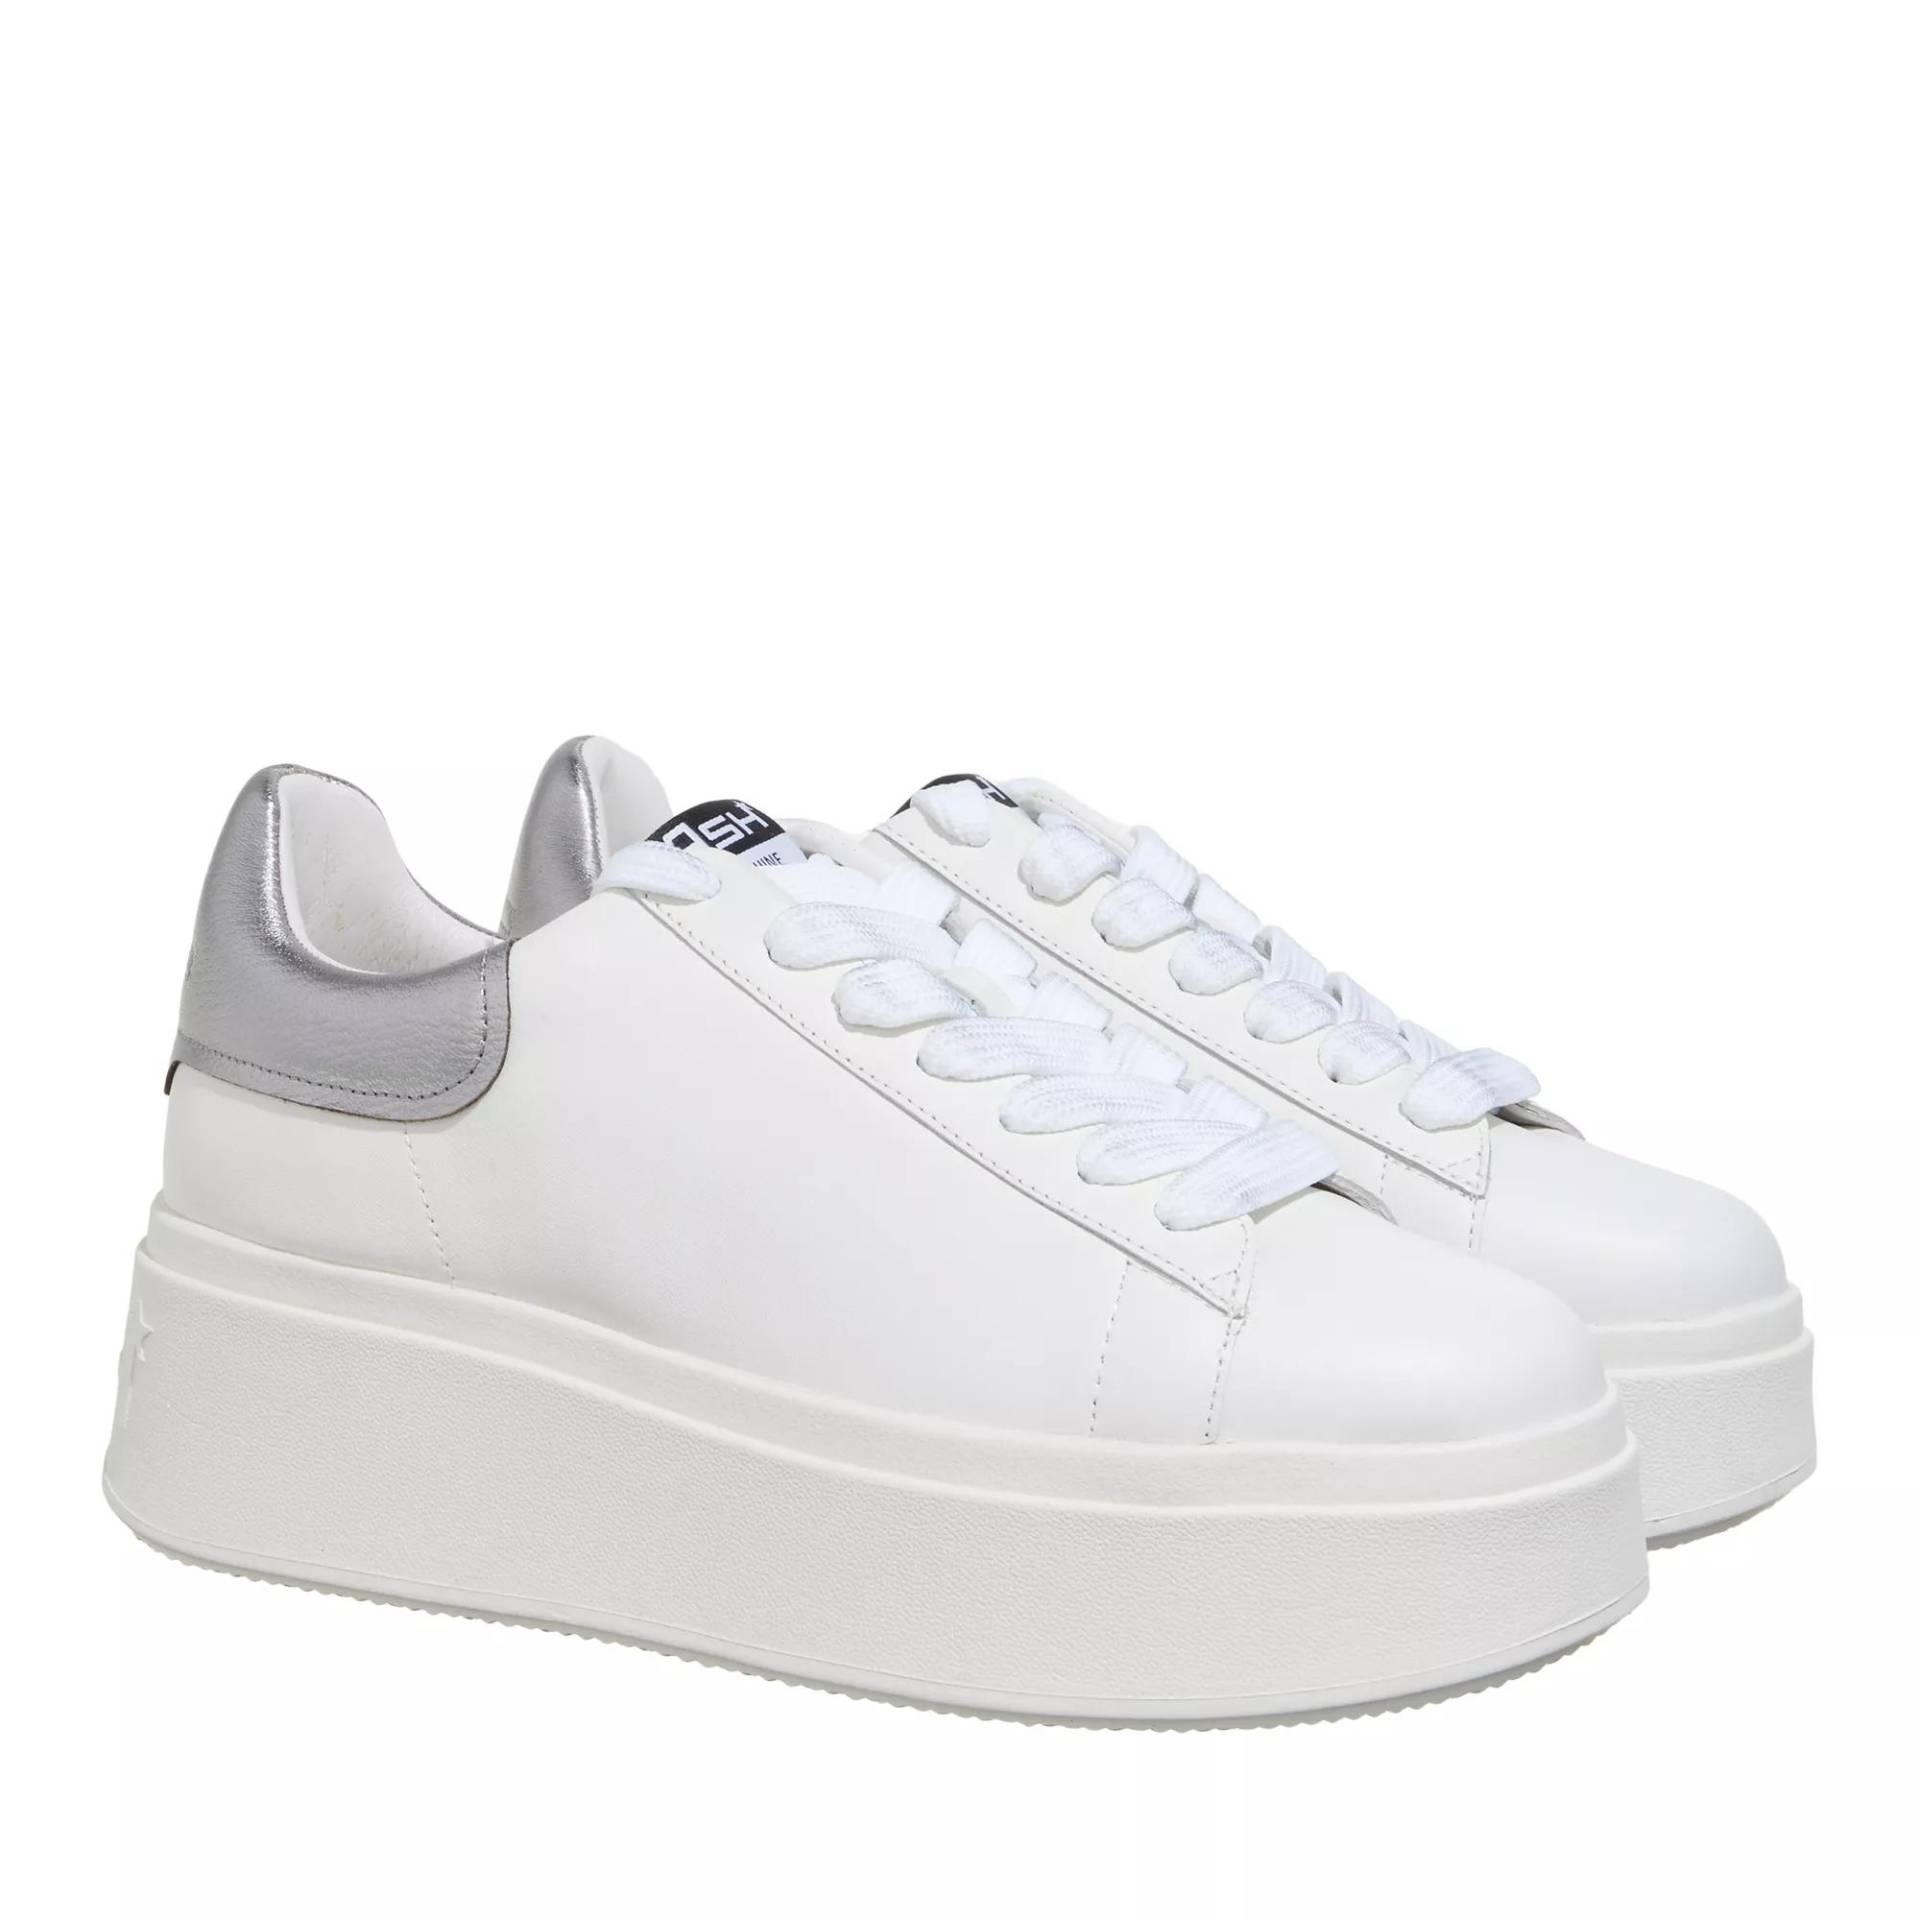 Ash Sneakers - Moby01 - Gr. 36 (EU) - in Weiß - für Damen von Ash